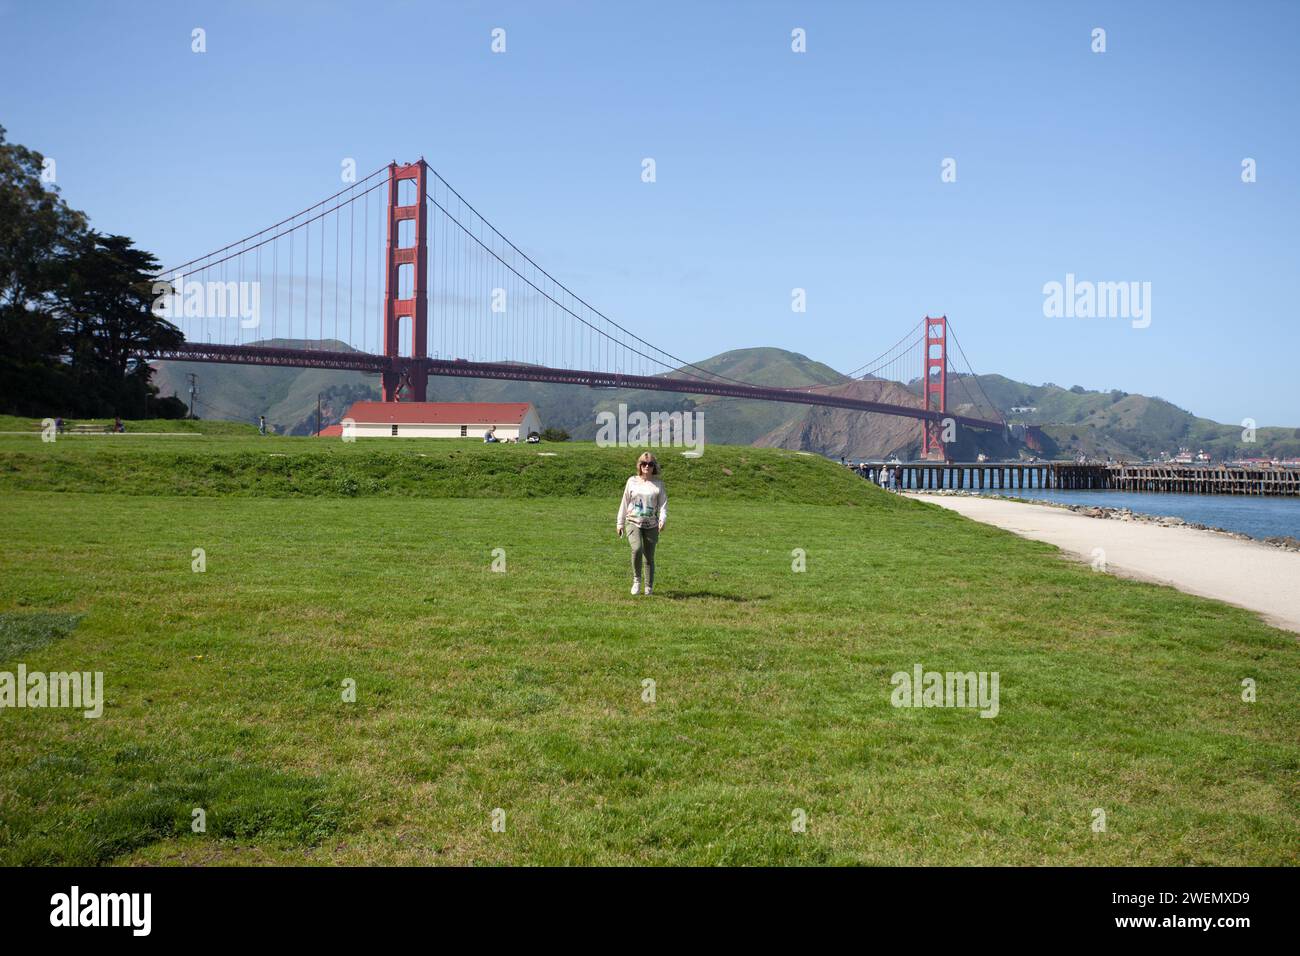 Il Golden Gate Bridge è un ponte sospeso che attraversa il Golden Gate, con una giovane donna che cammina sotto di esso sull'erba con il ponte in lontananza. Foto Stock